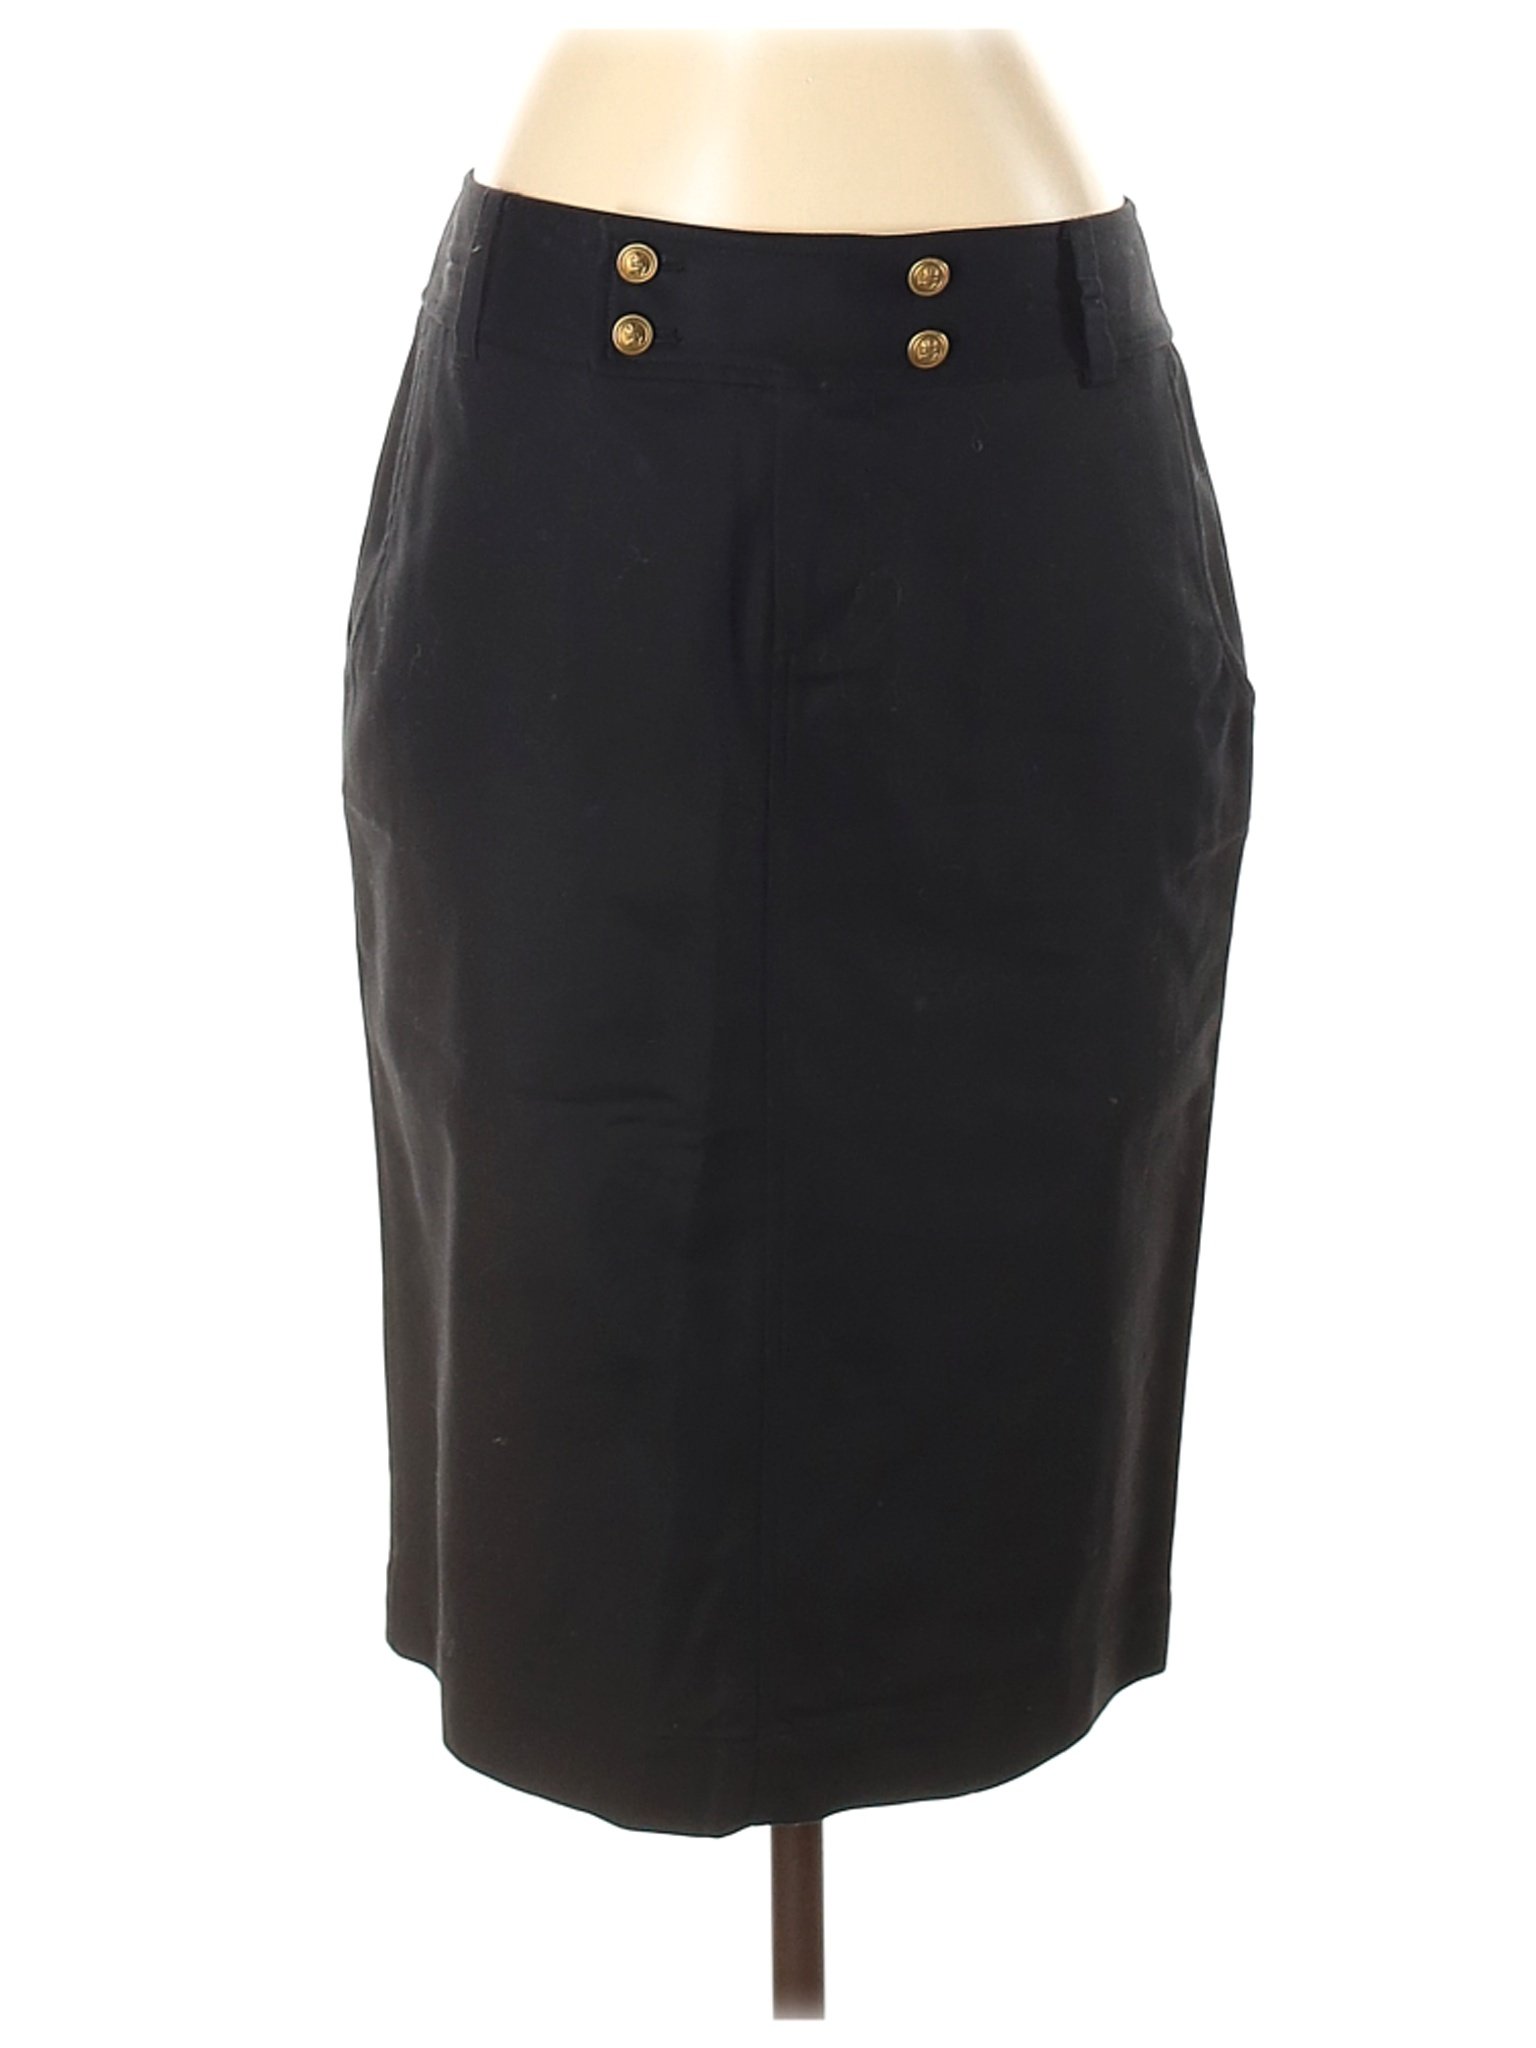 Lauren by Ralph Lauren Women Black Casual Skirt 4 | eBay